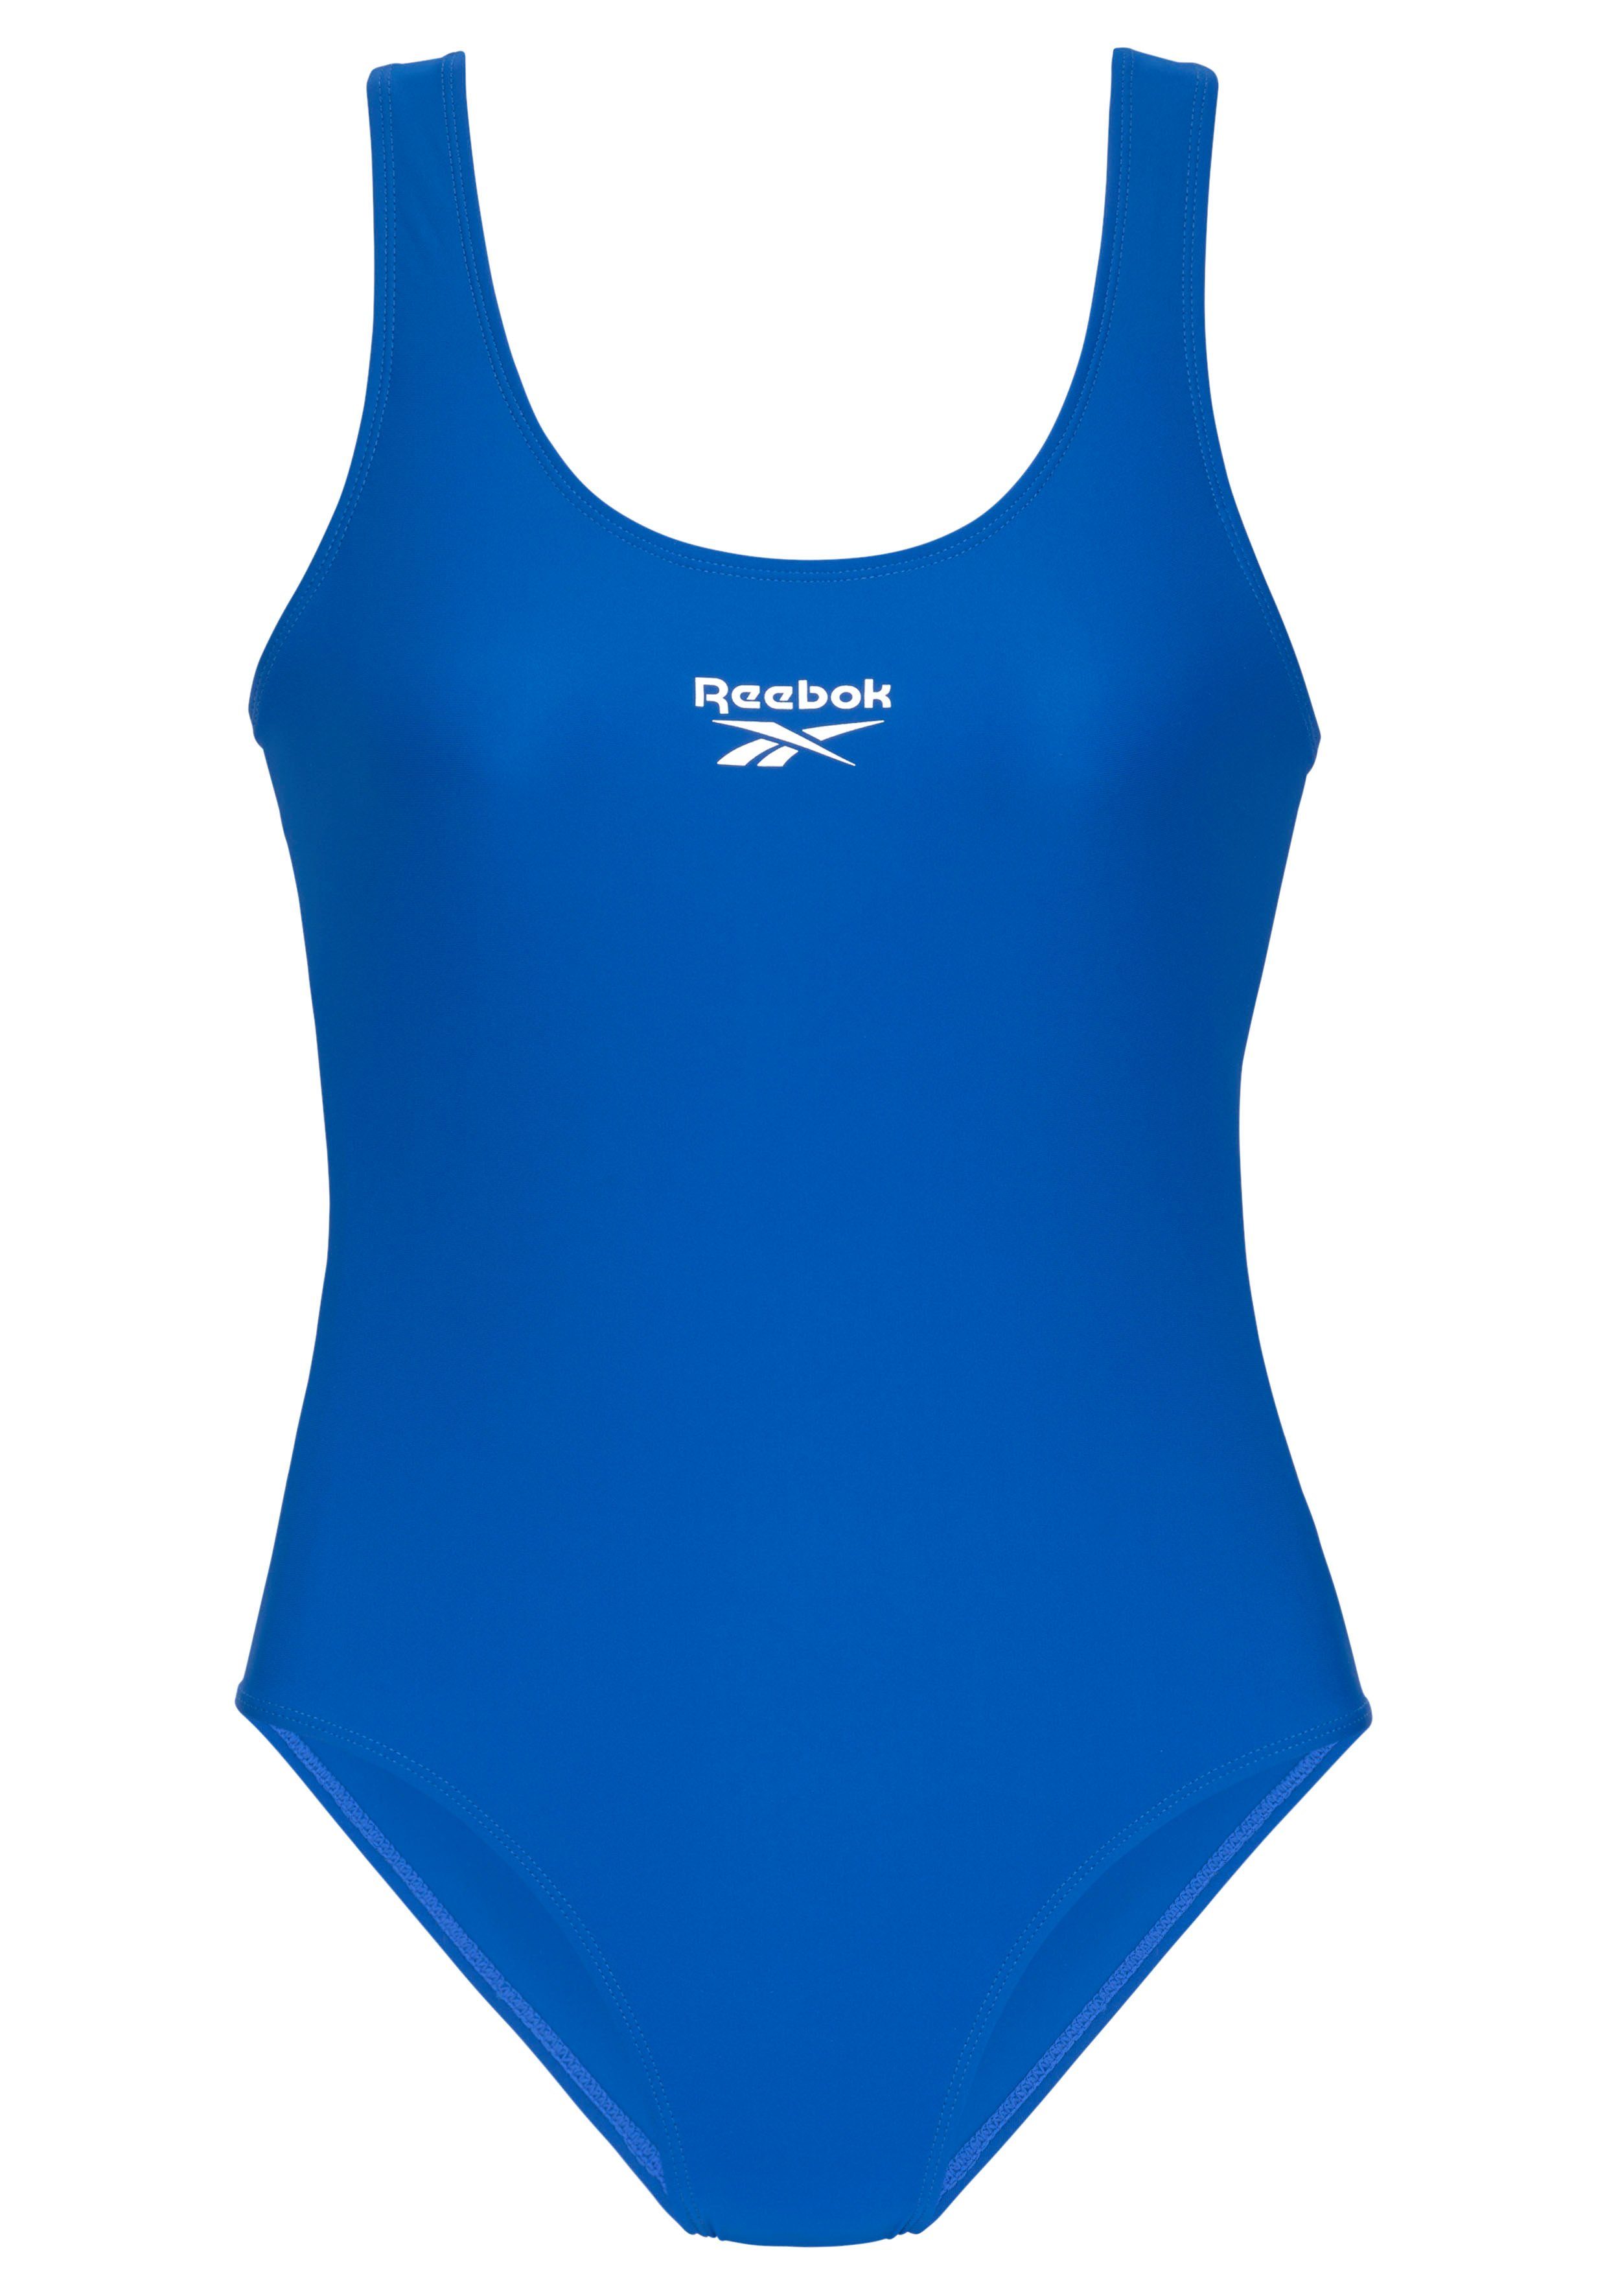 Badeanzug am Logoschriftzug humble Reebok und mit Rücken blue Adelia vorn